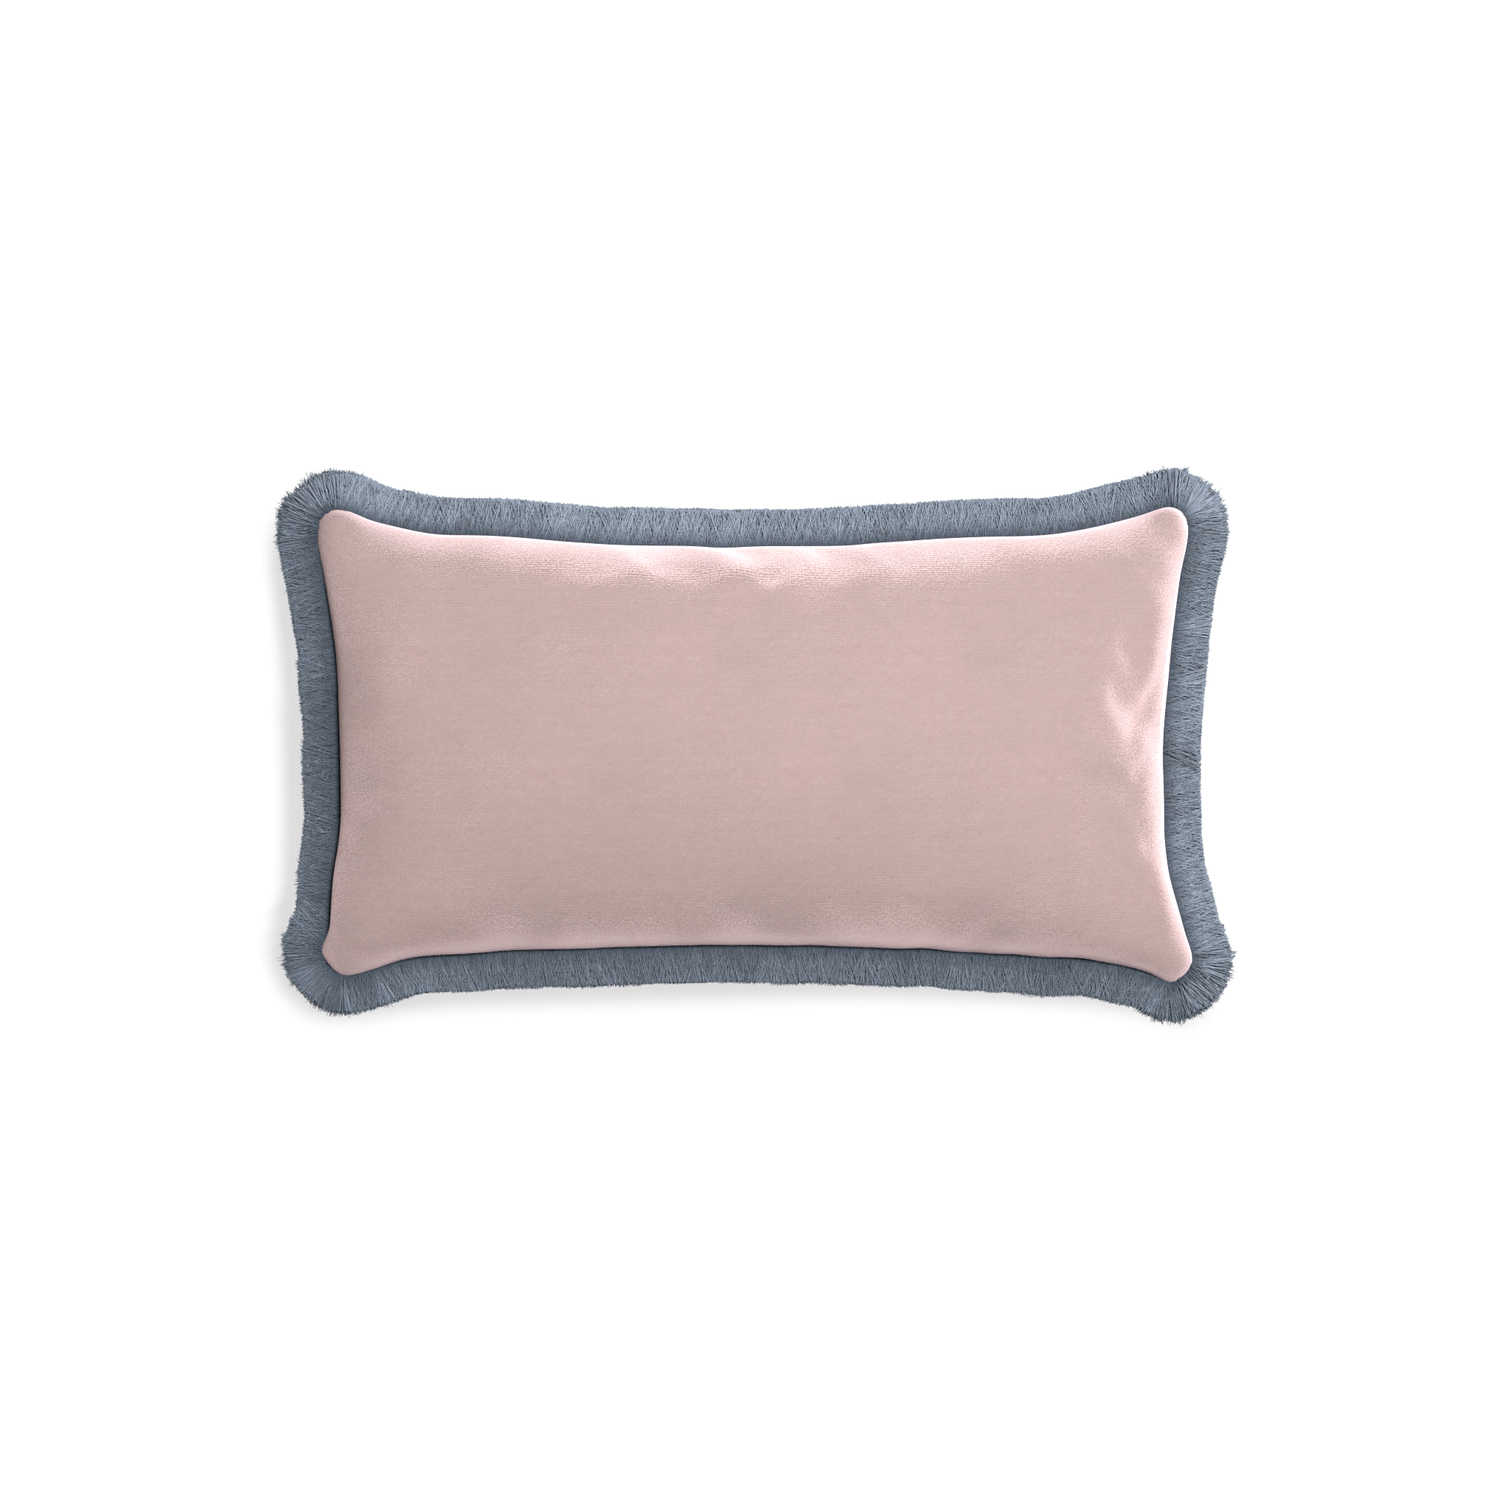 rectangle light pink velvet pillow with sky blue fringe